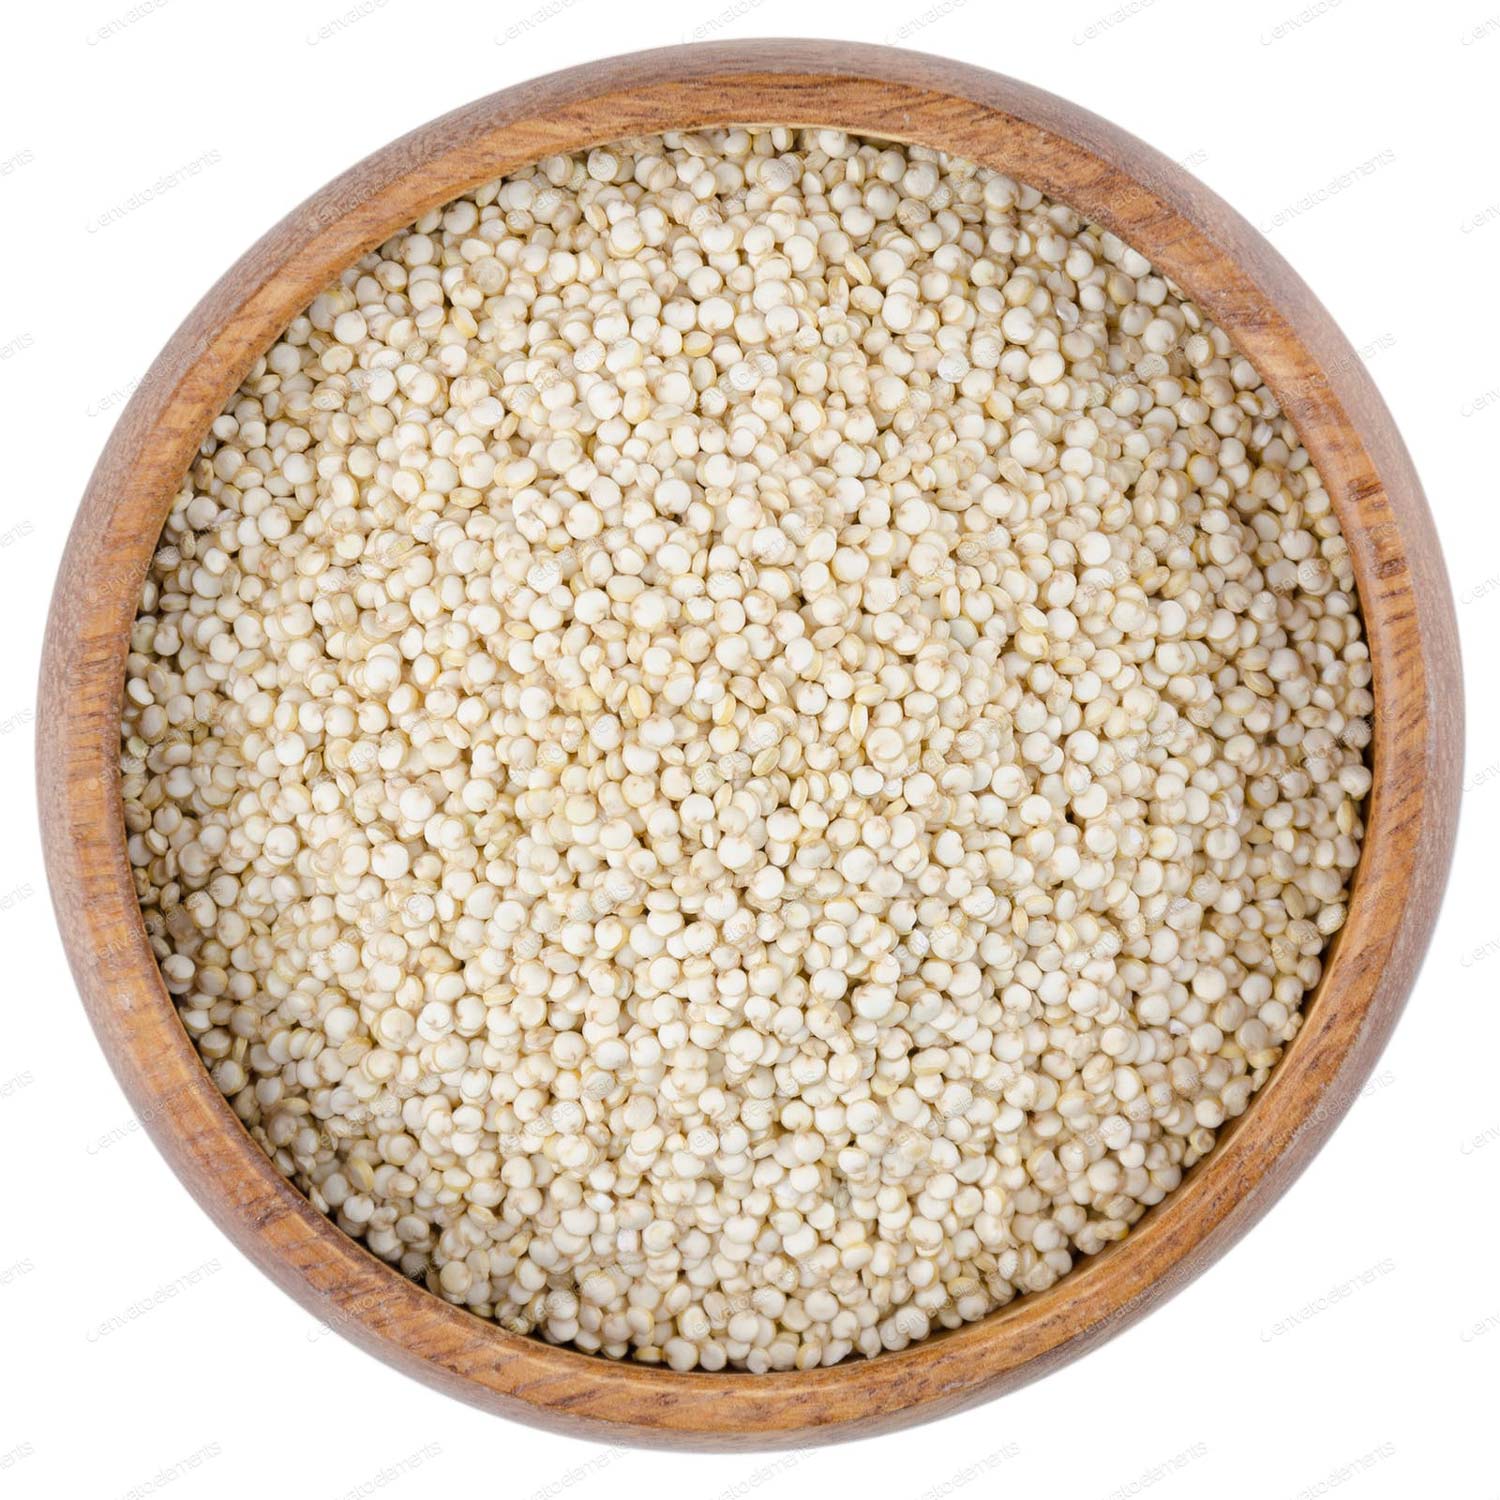 Quinoa Seeds Bowl Image